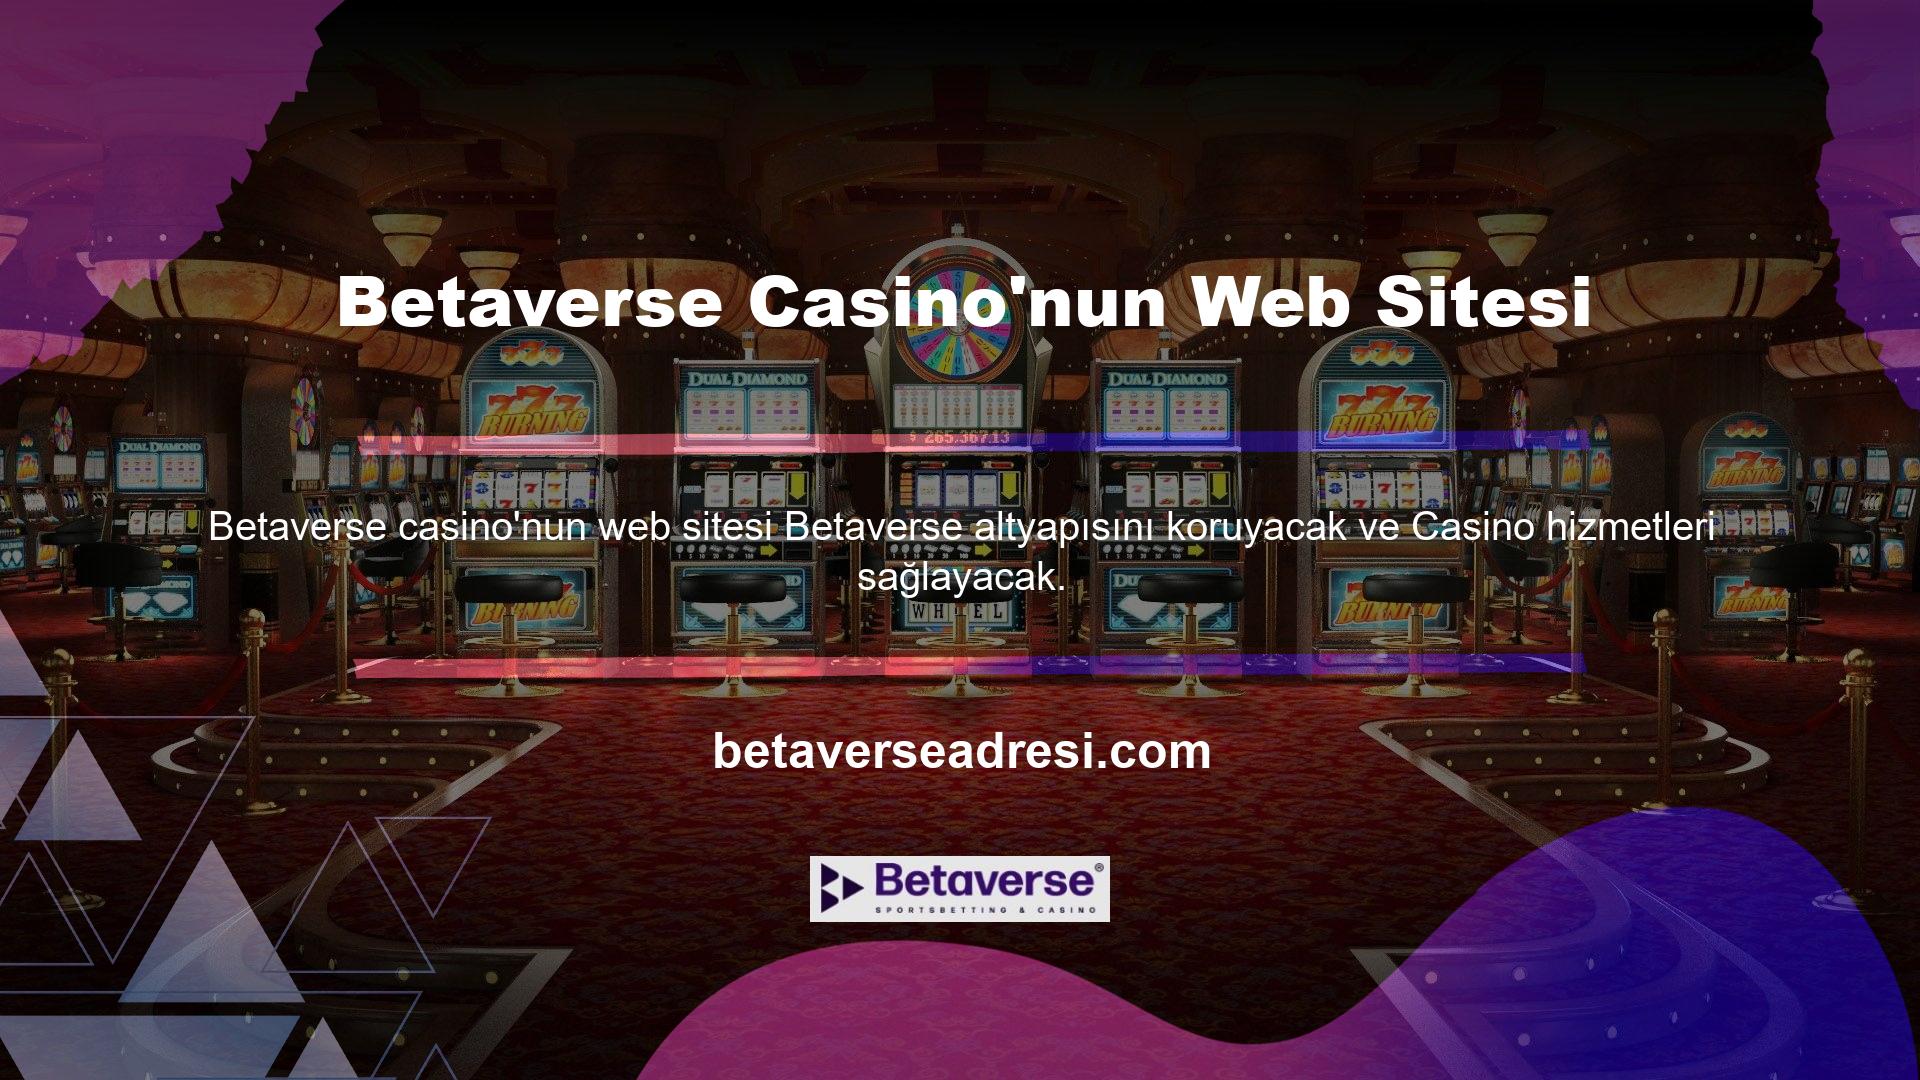 ' Ülkemizin ve dünyanın en popüler casinolarından biri olan Betaverse casino web sitesinin katılımcı sayısında önceki döneme göre bir artış görüldü